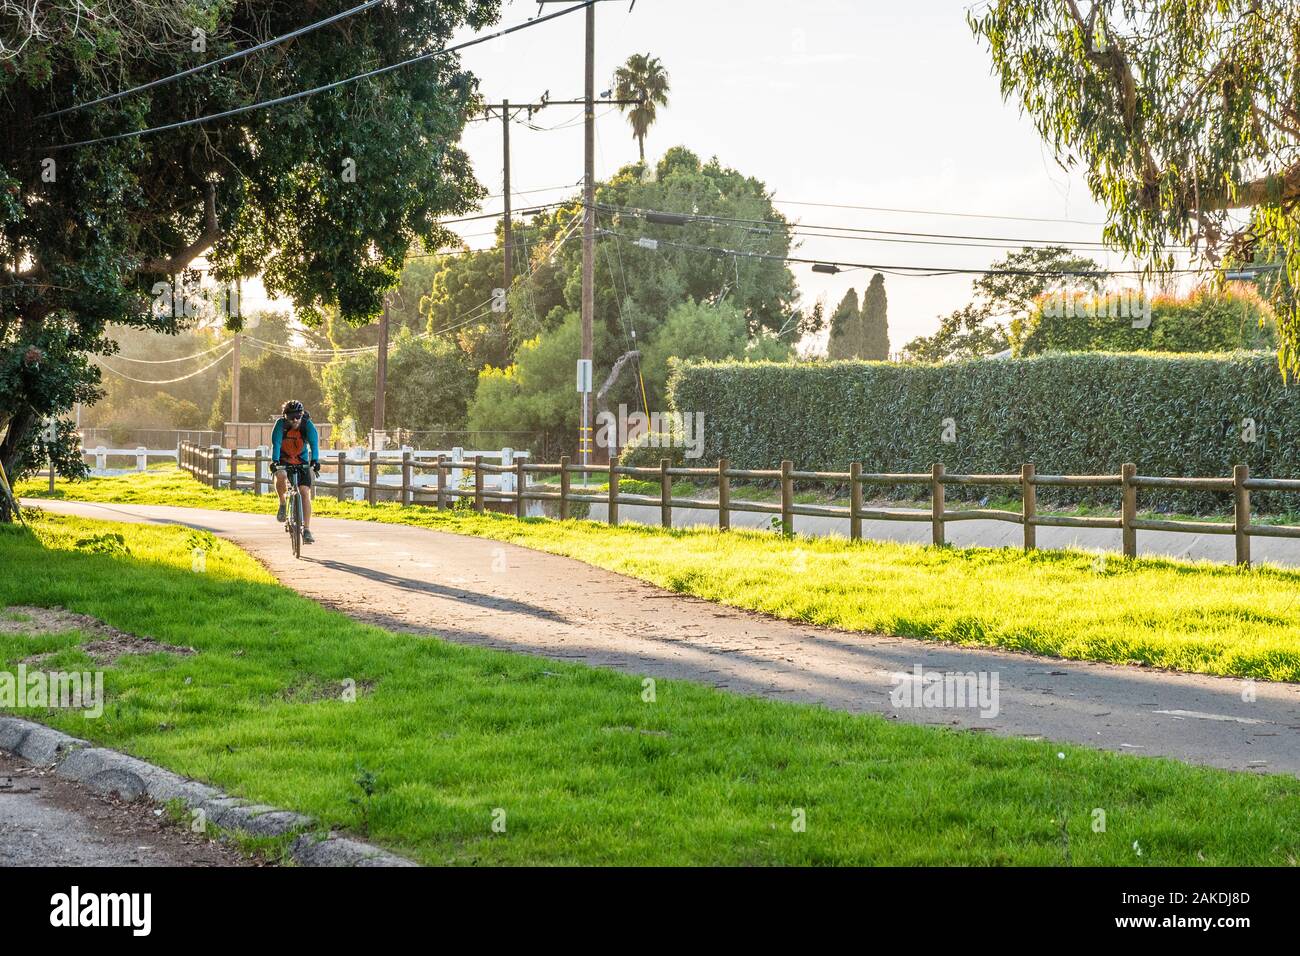 Un molto usato il percorso in bicicletta nel tardo pomeriggio luce drammatica con un maschio di bike rider passeggiate sul percorso. Foto Stock